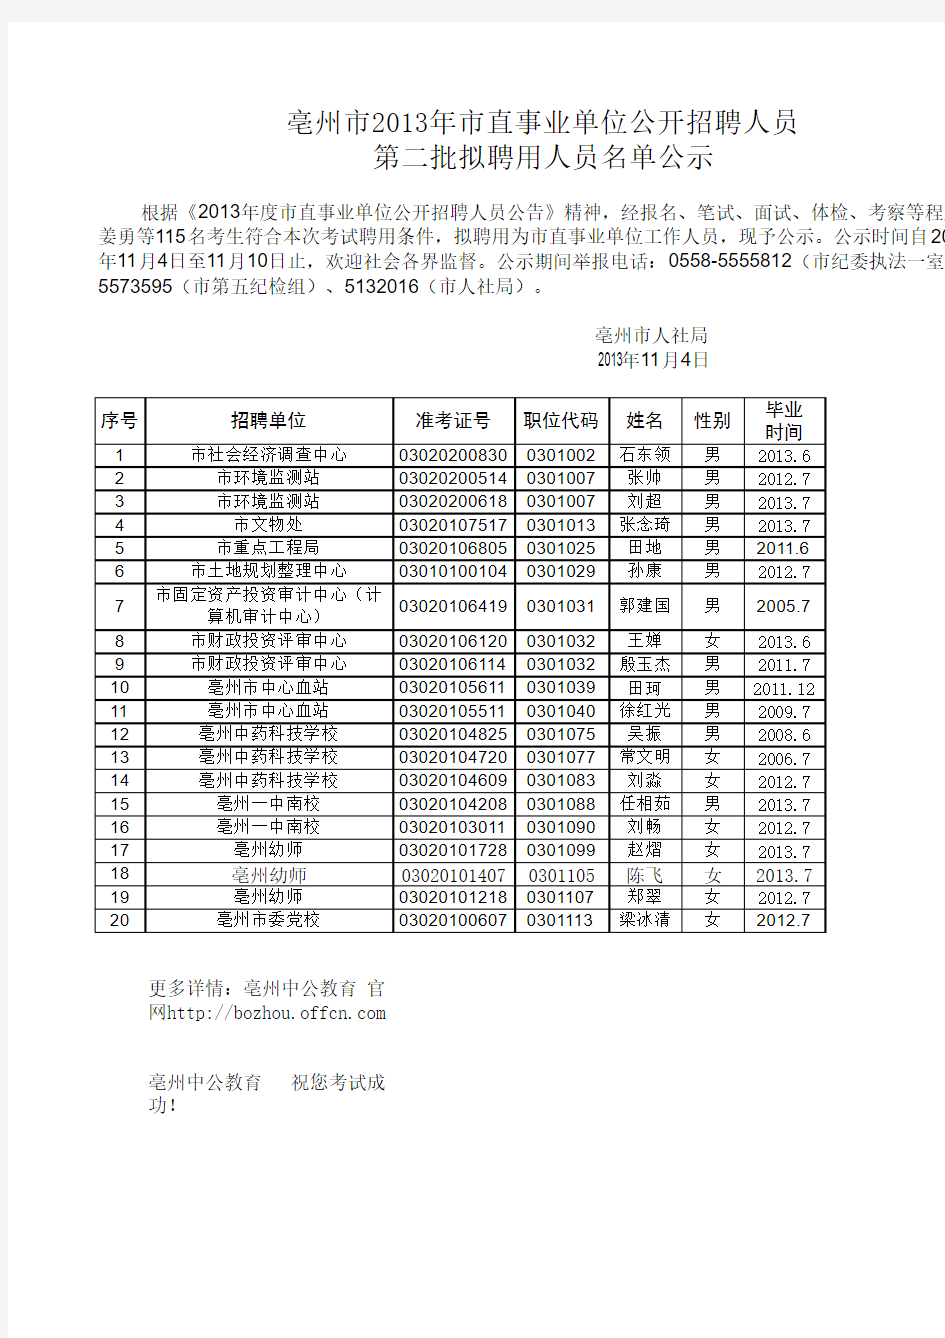 亳州市2013年市直事业单位公开招聘人员第二批拟聘用人员名单公示